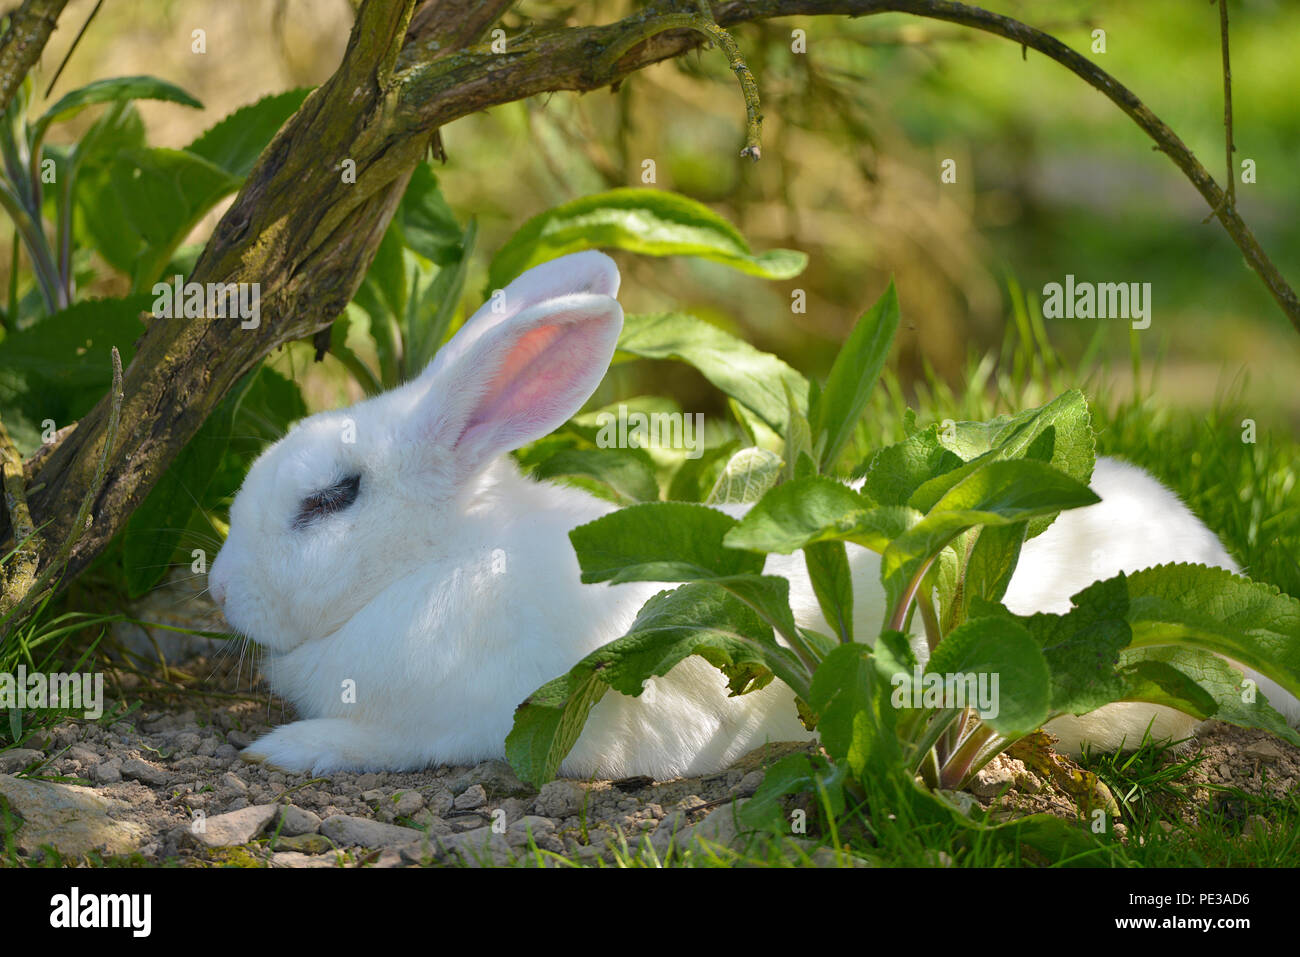 White Rabbit (Oryctolagus cuniculus) allongé sur le sol entre les feuilles Banque D'Images